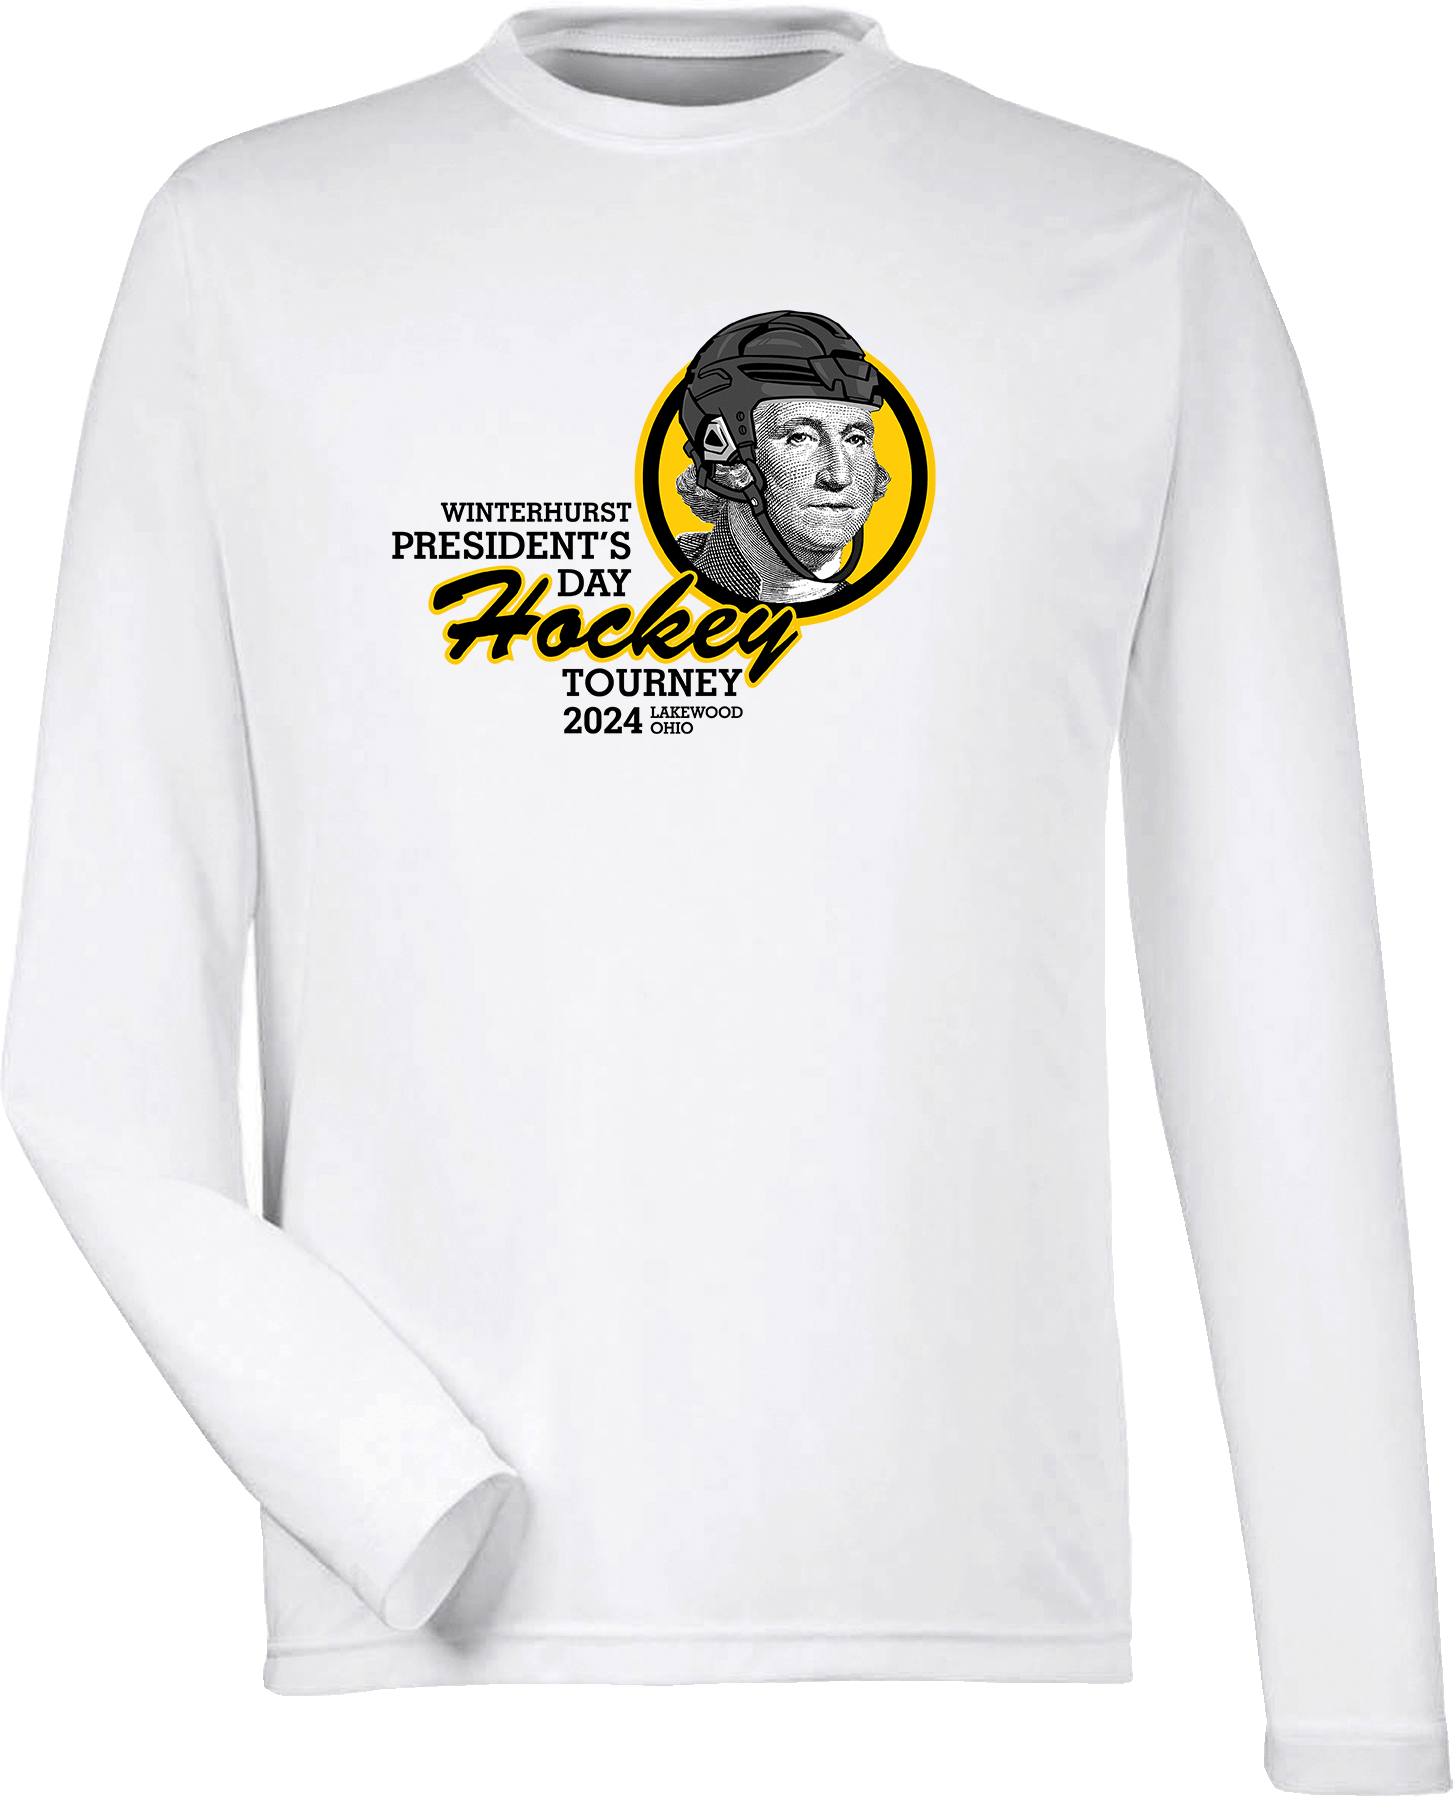 Performance Shirts - 2024 Winterhurst President's Day Hockey Tourney